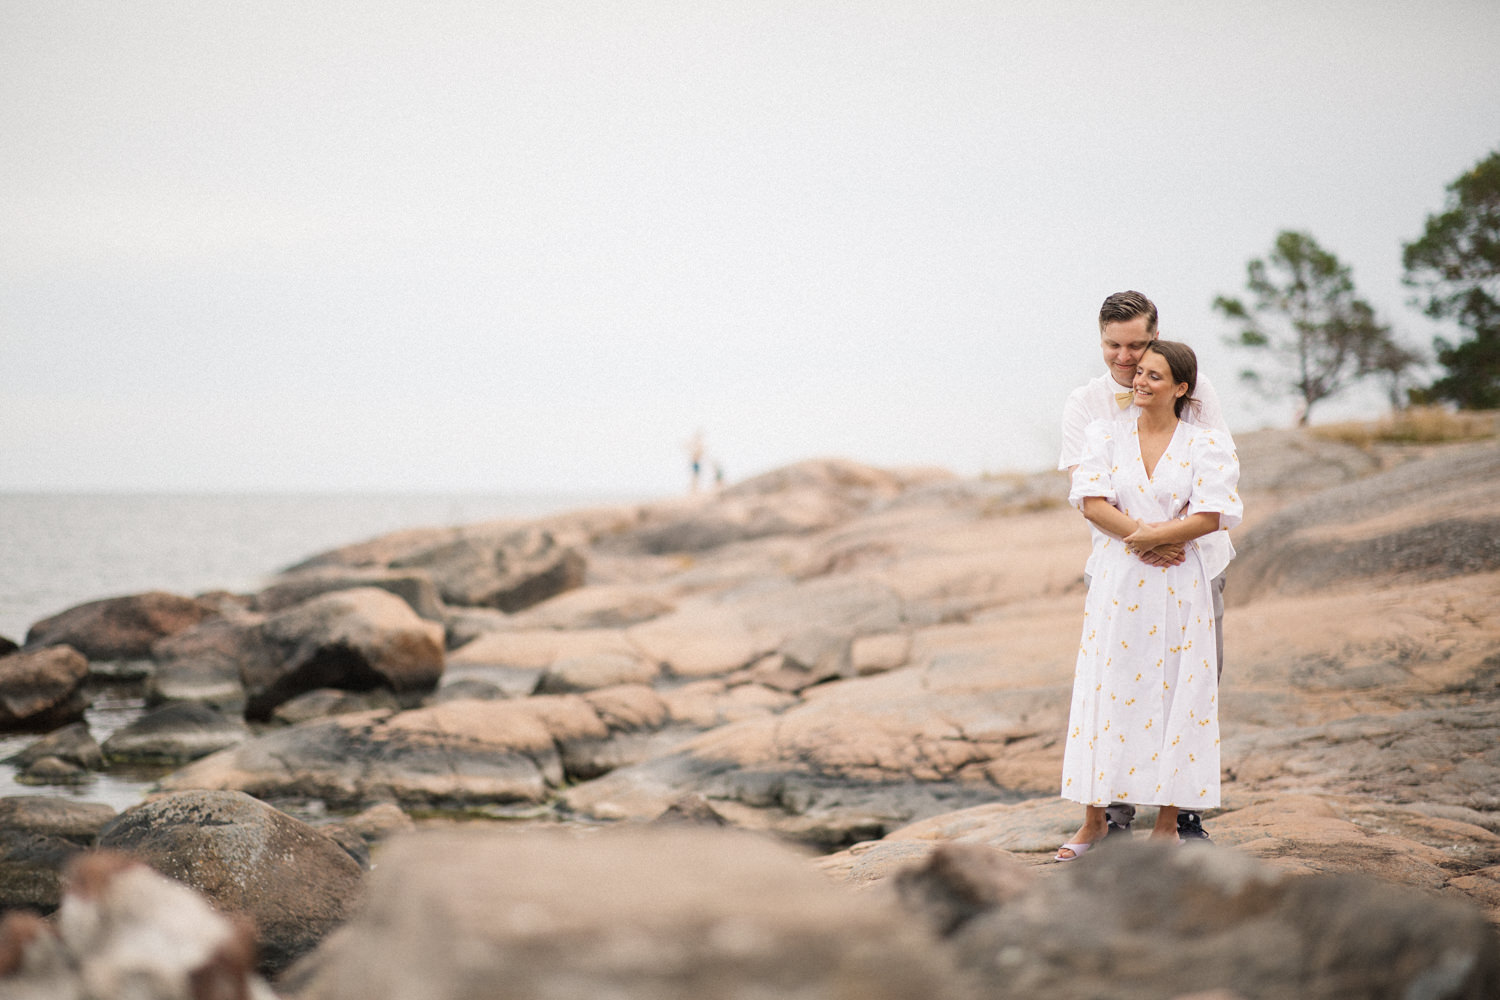 Parfotografering inför bröllop, en så kallad Engagement session, på idylliska Gunnarsö, Oskarshamn som ligger i Småland. Fotograf är Tove Lundquist, verksam bröllopsfotograf i Oskarshamn och Småland.